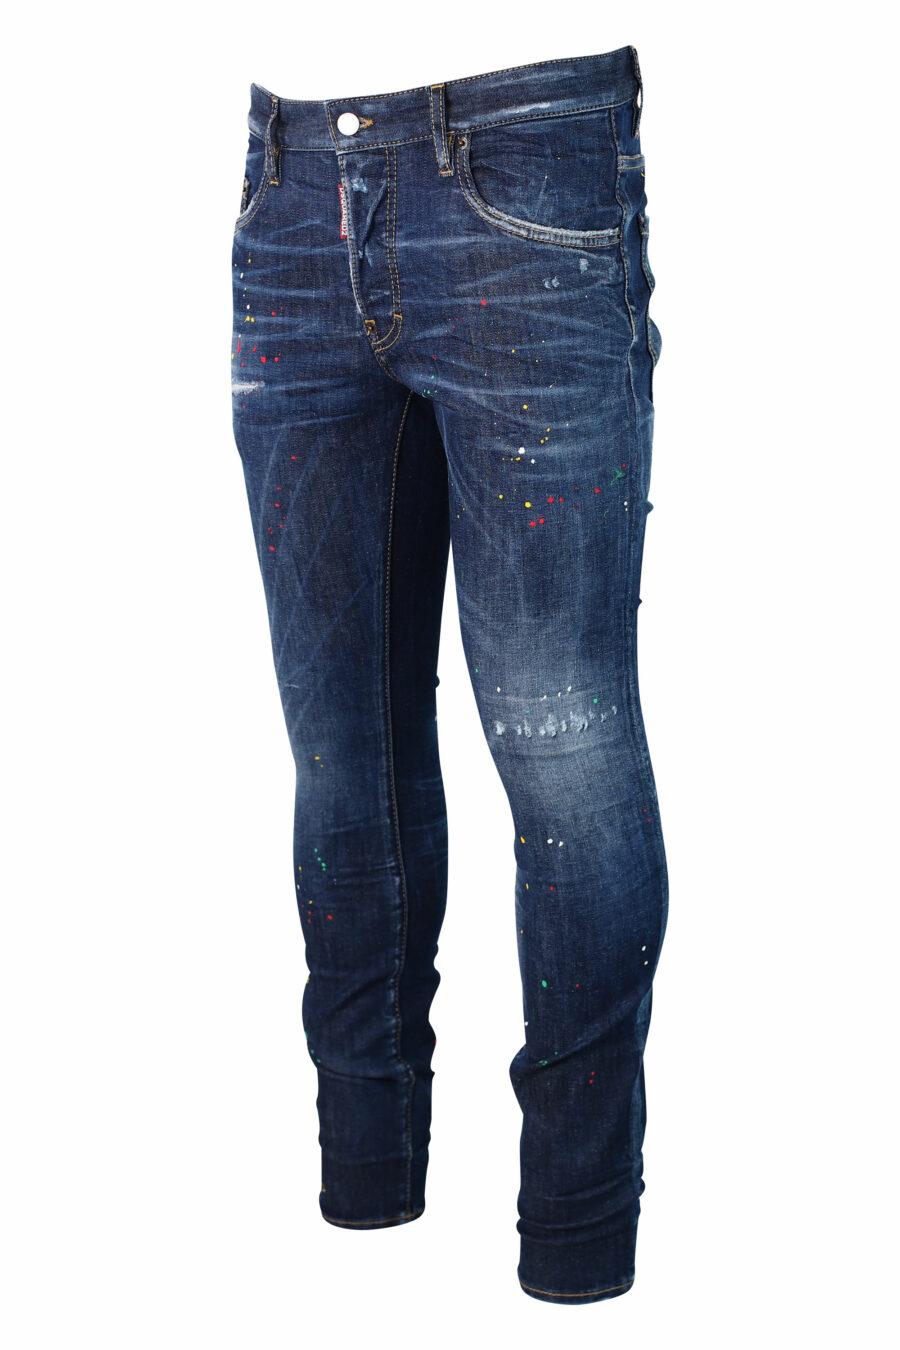 Pantalón vaquero azul "super twinky jean" desgastado "bob marley" - IMG 9923